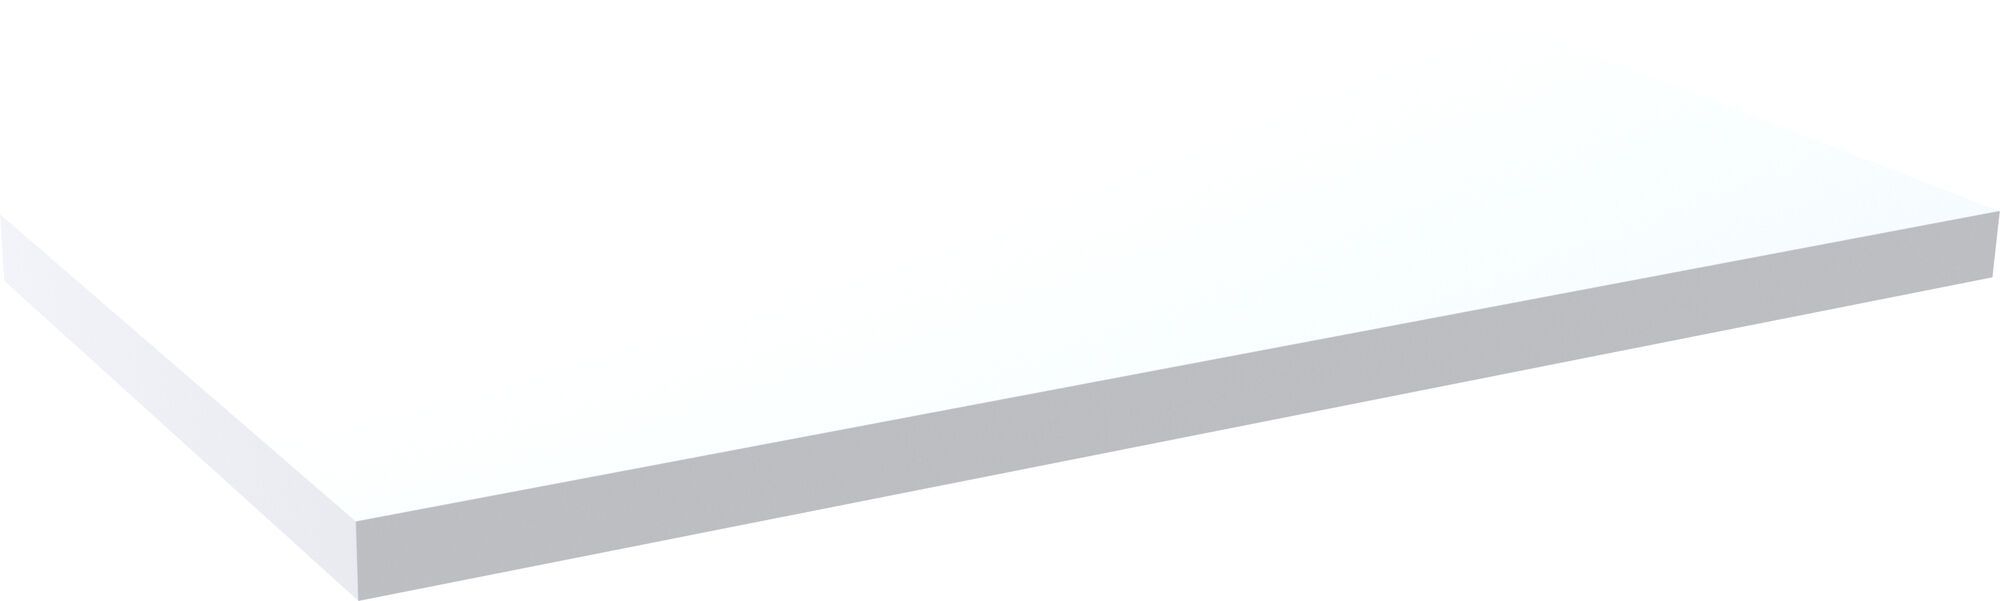 Topblad 91 cm wit hoogglans